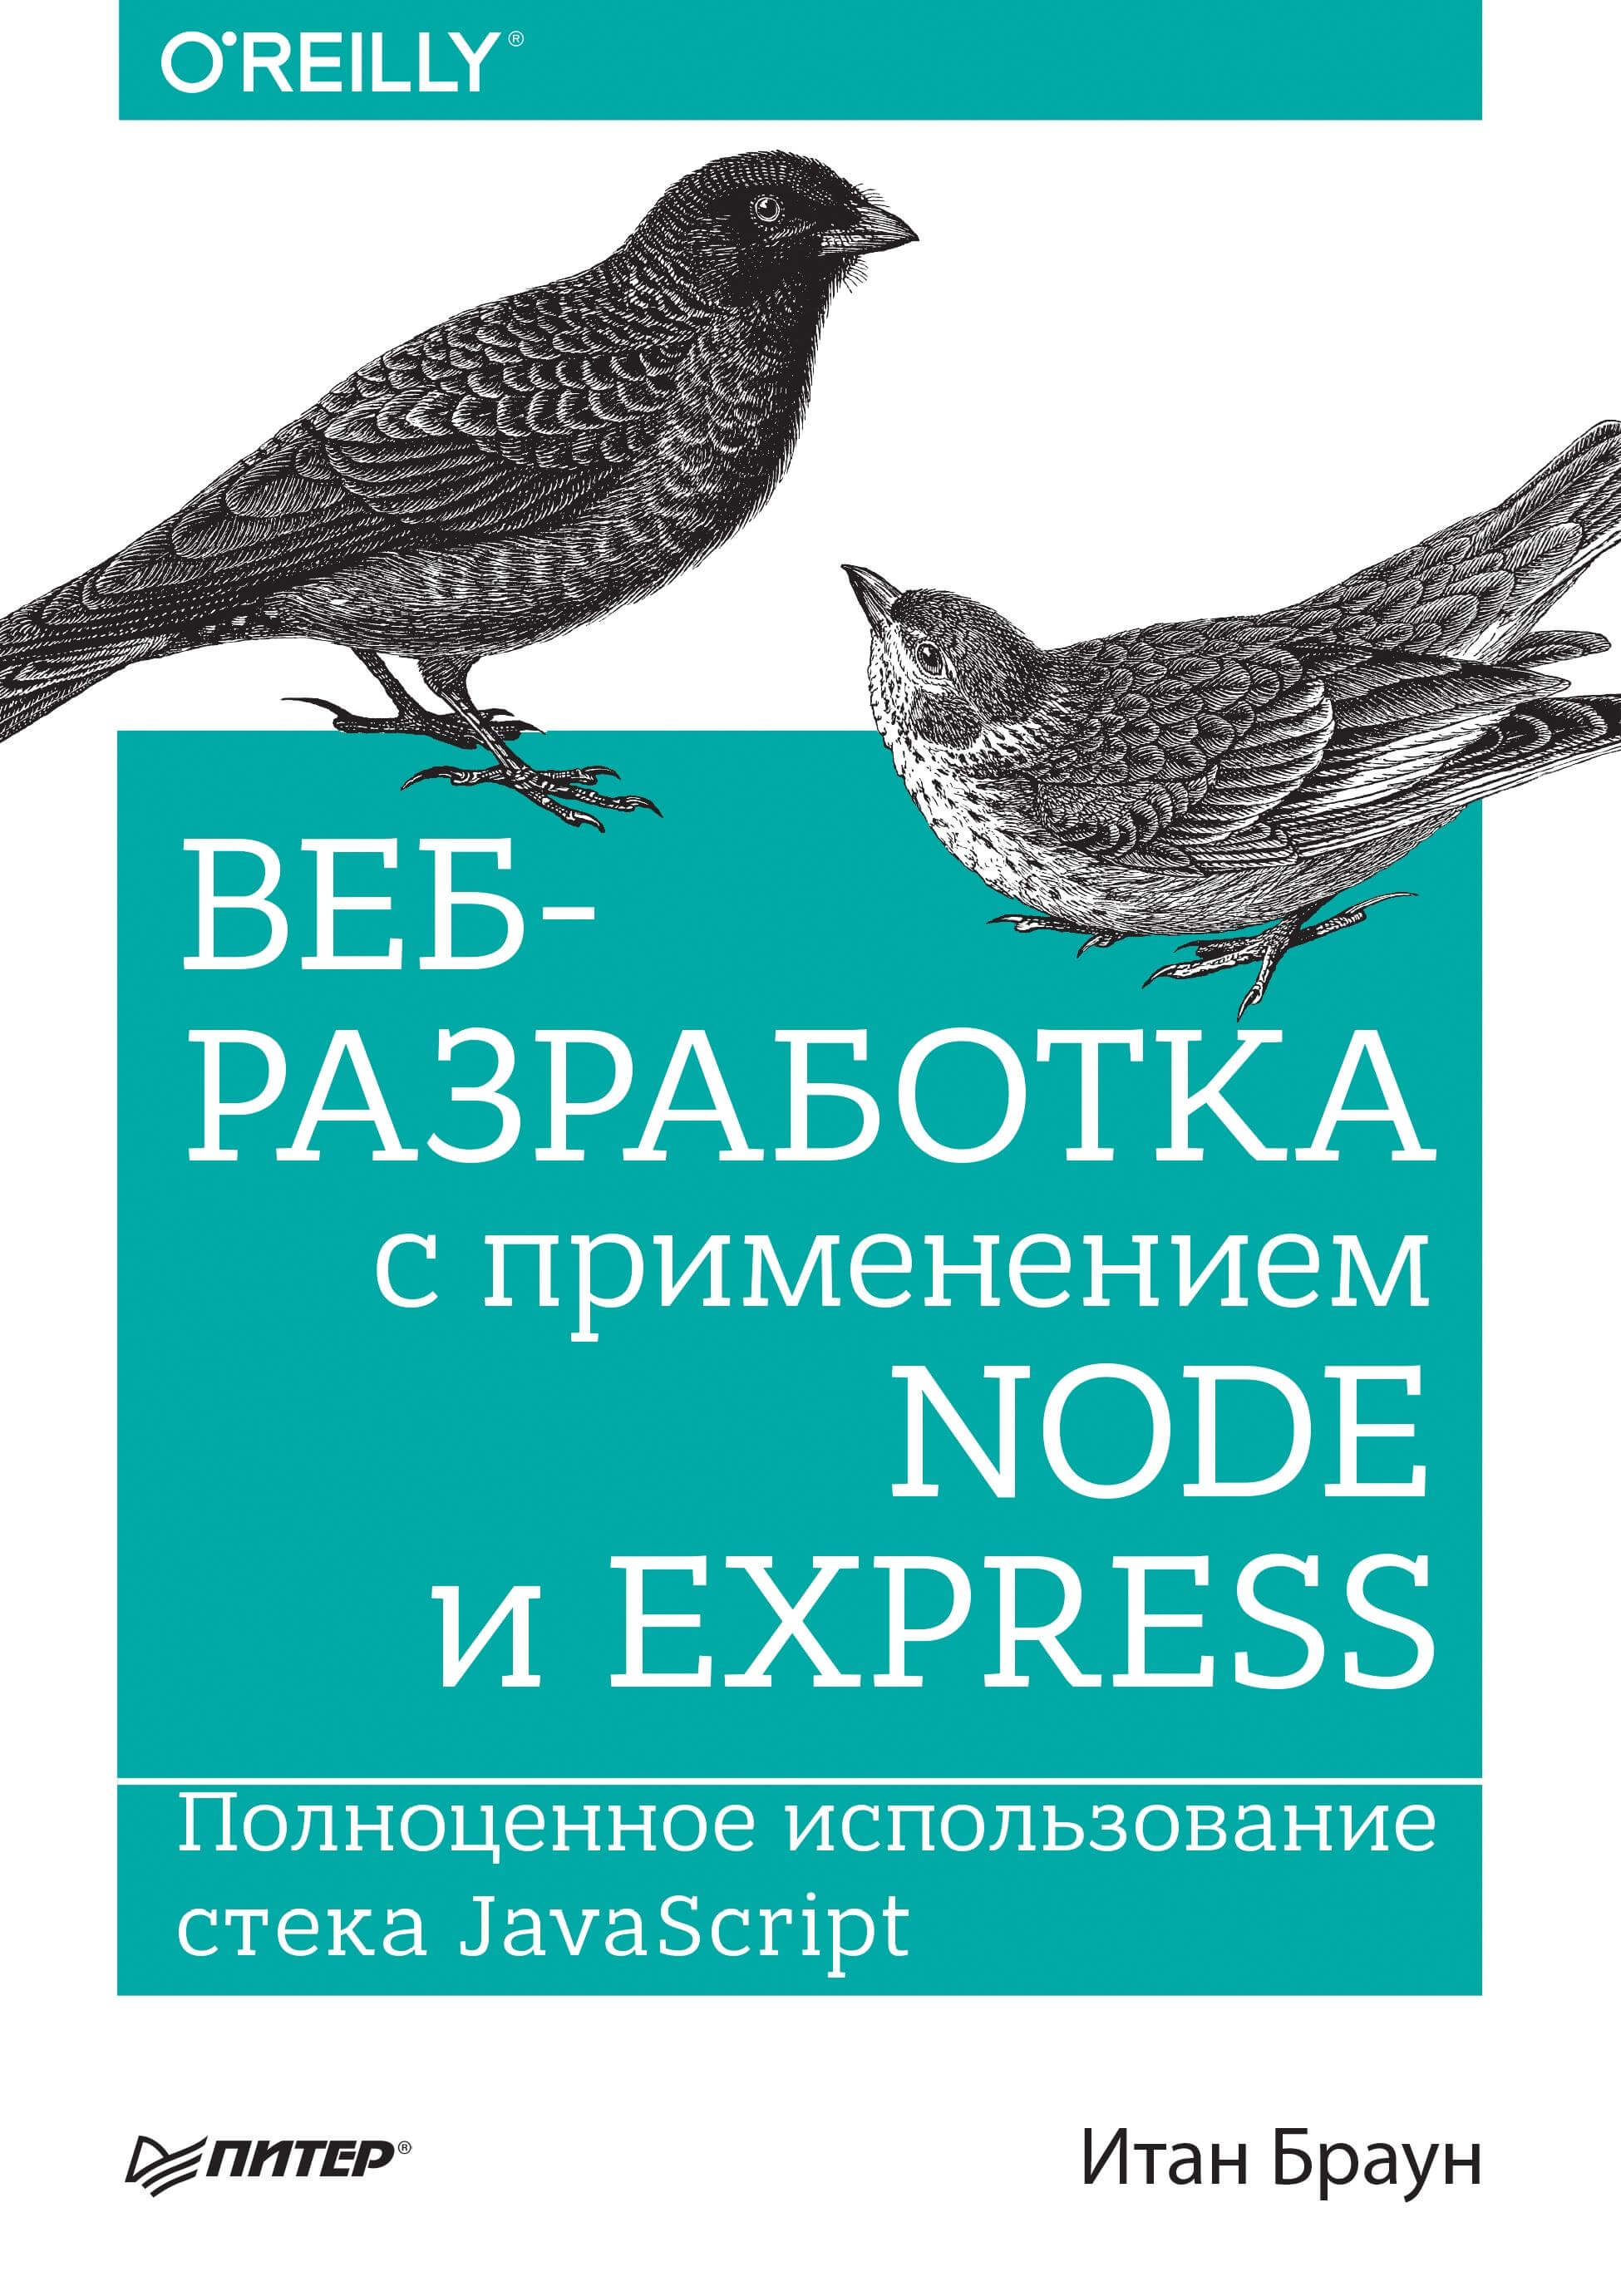 Веб-разработка с применением Node и Express, 2017, Итан Браун.